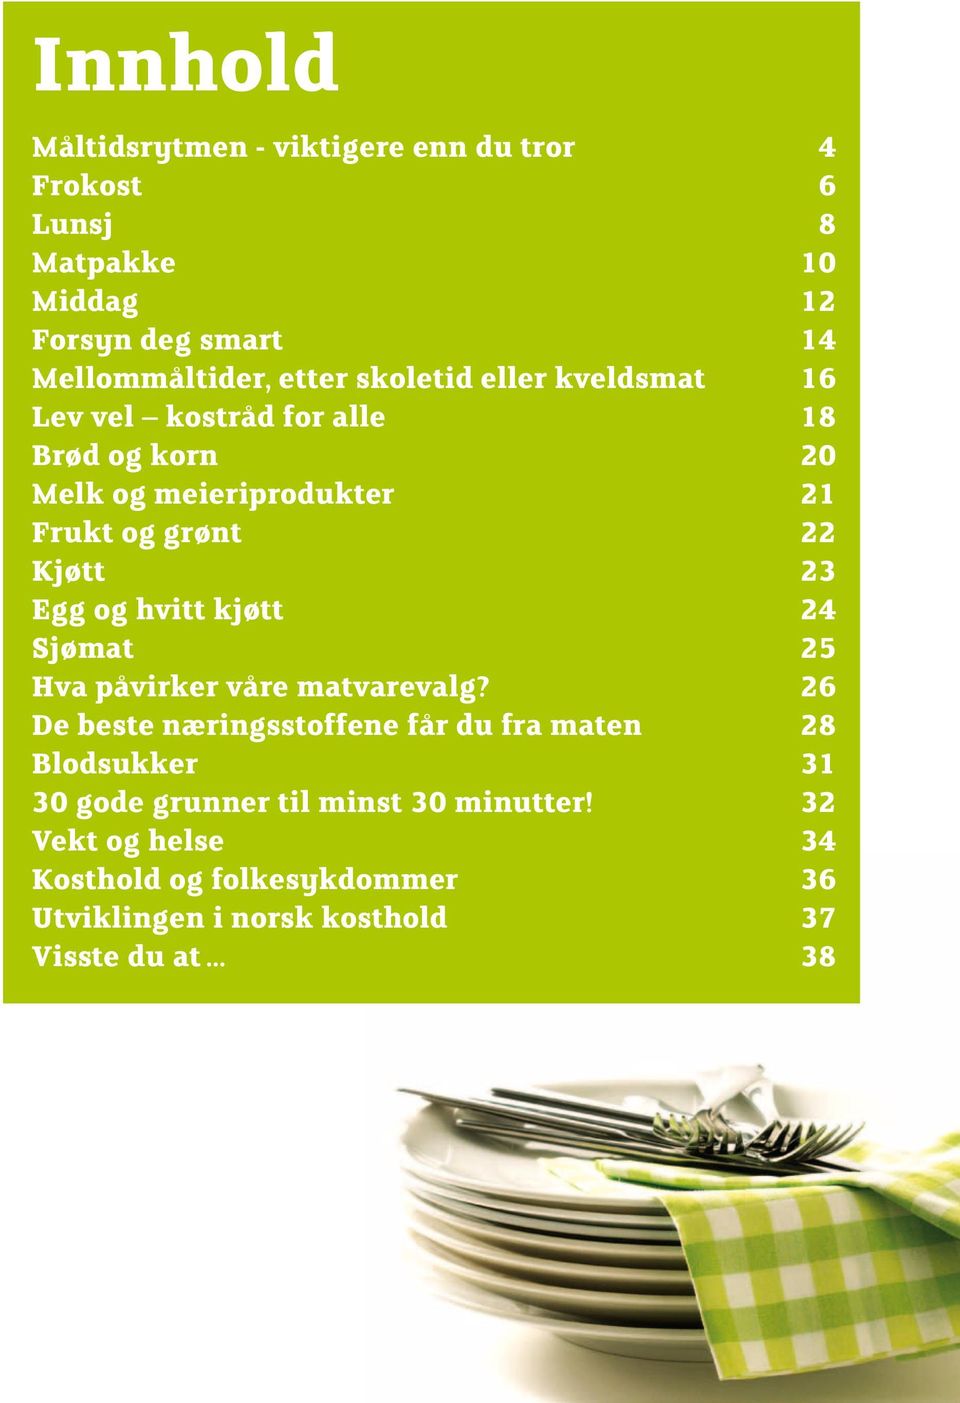 og hvitt kjøtt 24 Sjømat 25 Hva påvirker våre matvarevalg?